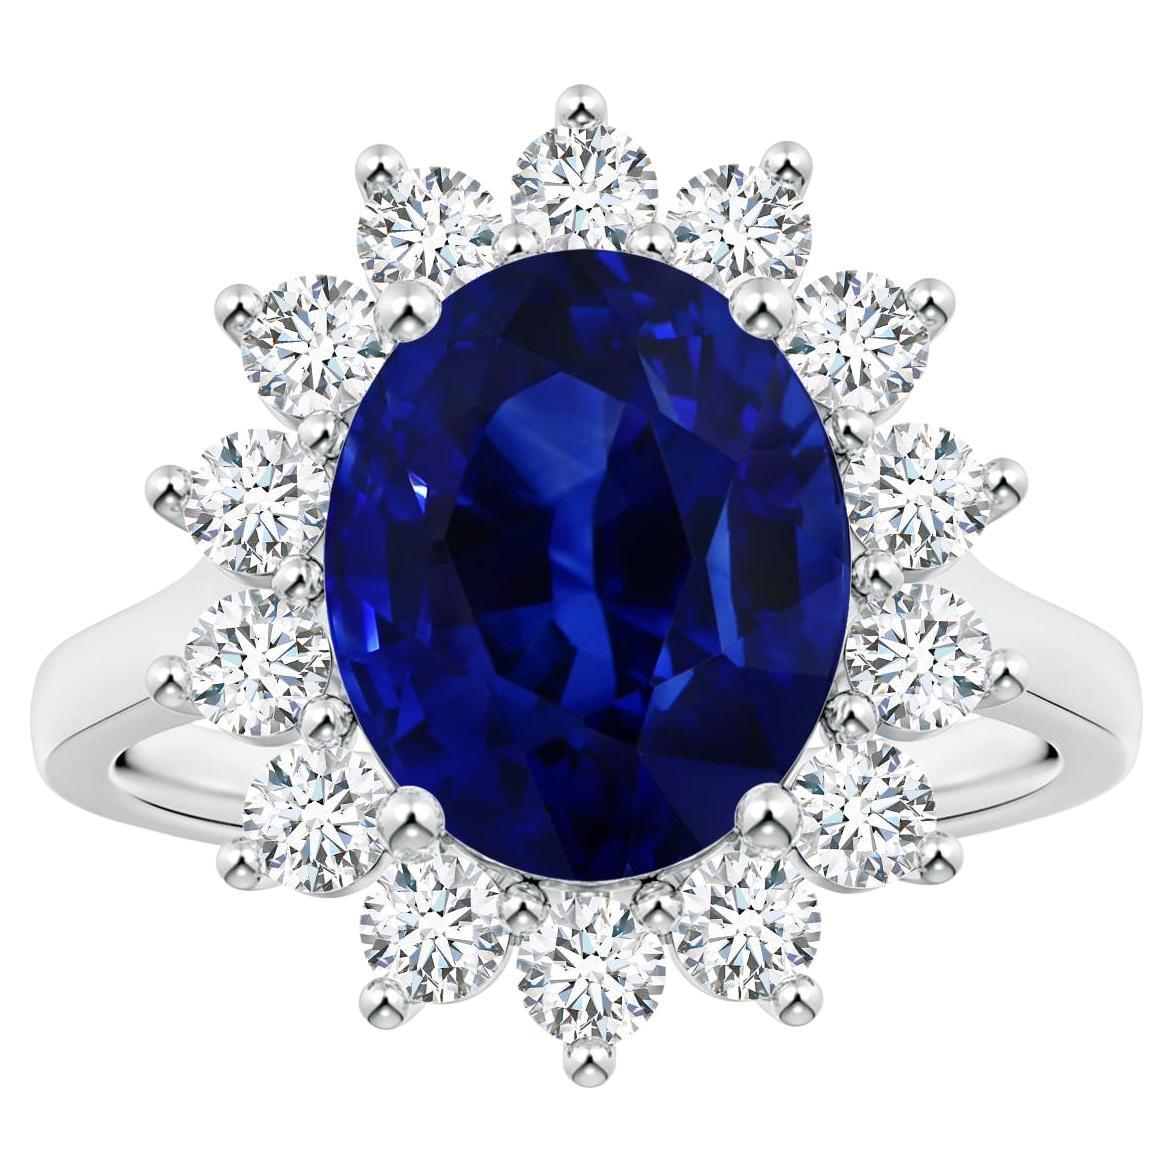 ANGARA Prinzessin Diana inspirierter GIA-zertifizierter blauer Saphir Halo Weißgoldring